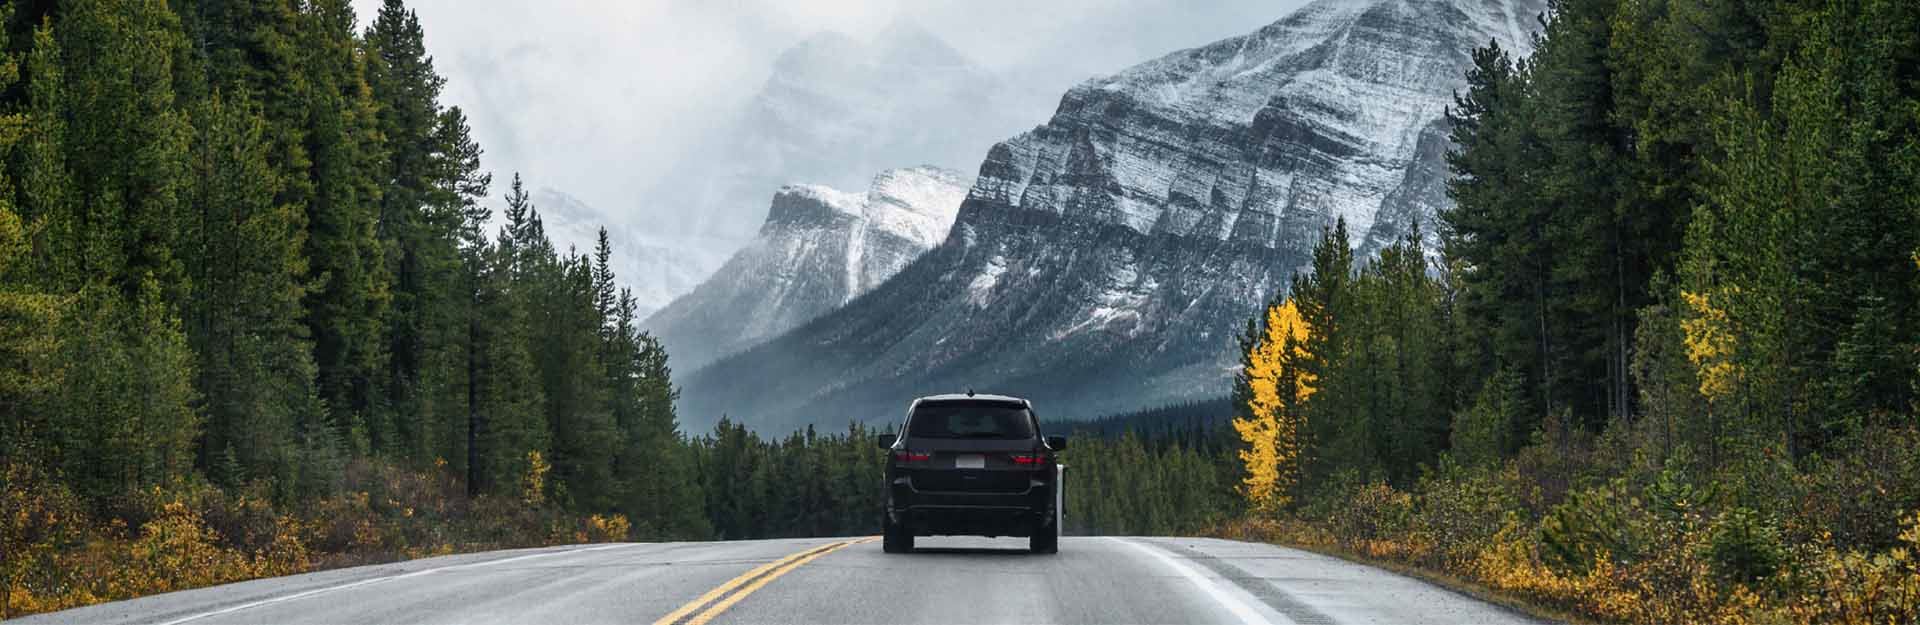 Au centre, la partie arrière d'un véhicule de type SUV circulant sur une route. Les routes sont bordées d'une végétation abondante, d'arbres hauts et élancés. En arrière-plan, il y a quelques montagnes.